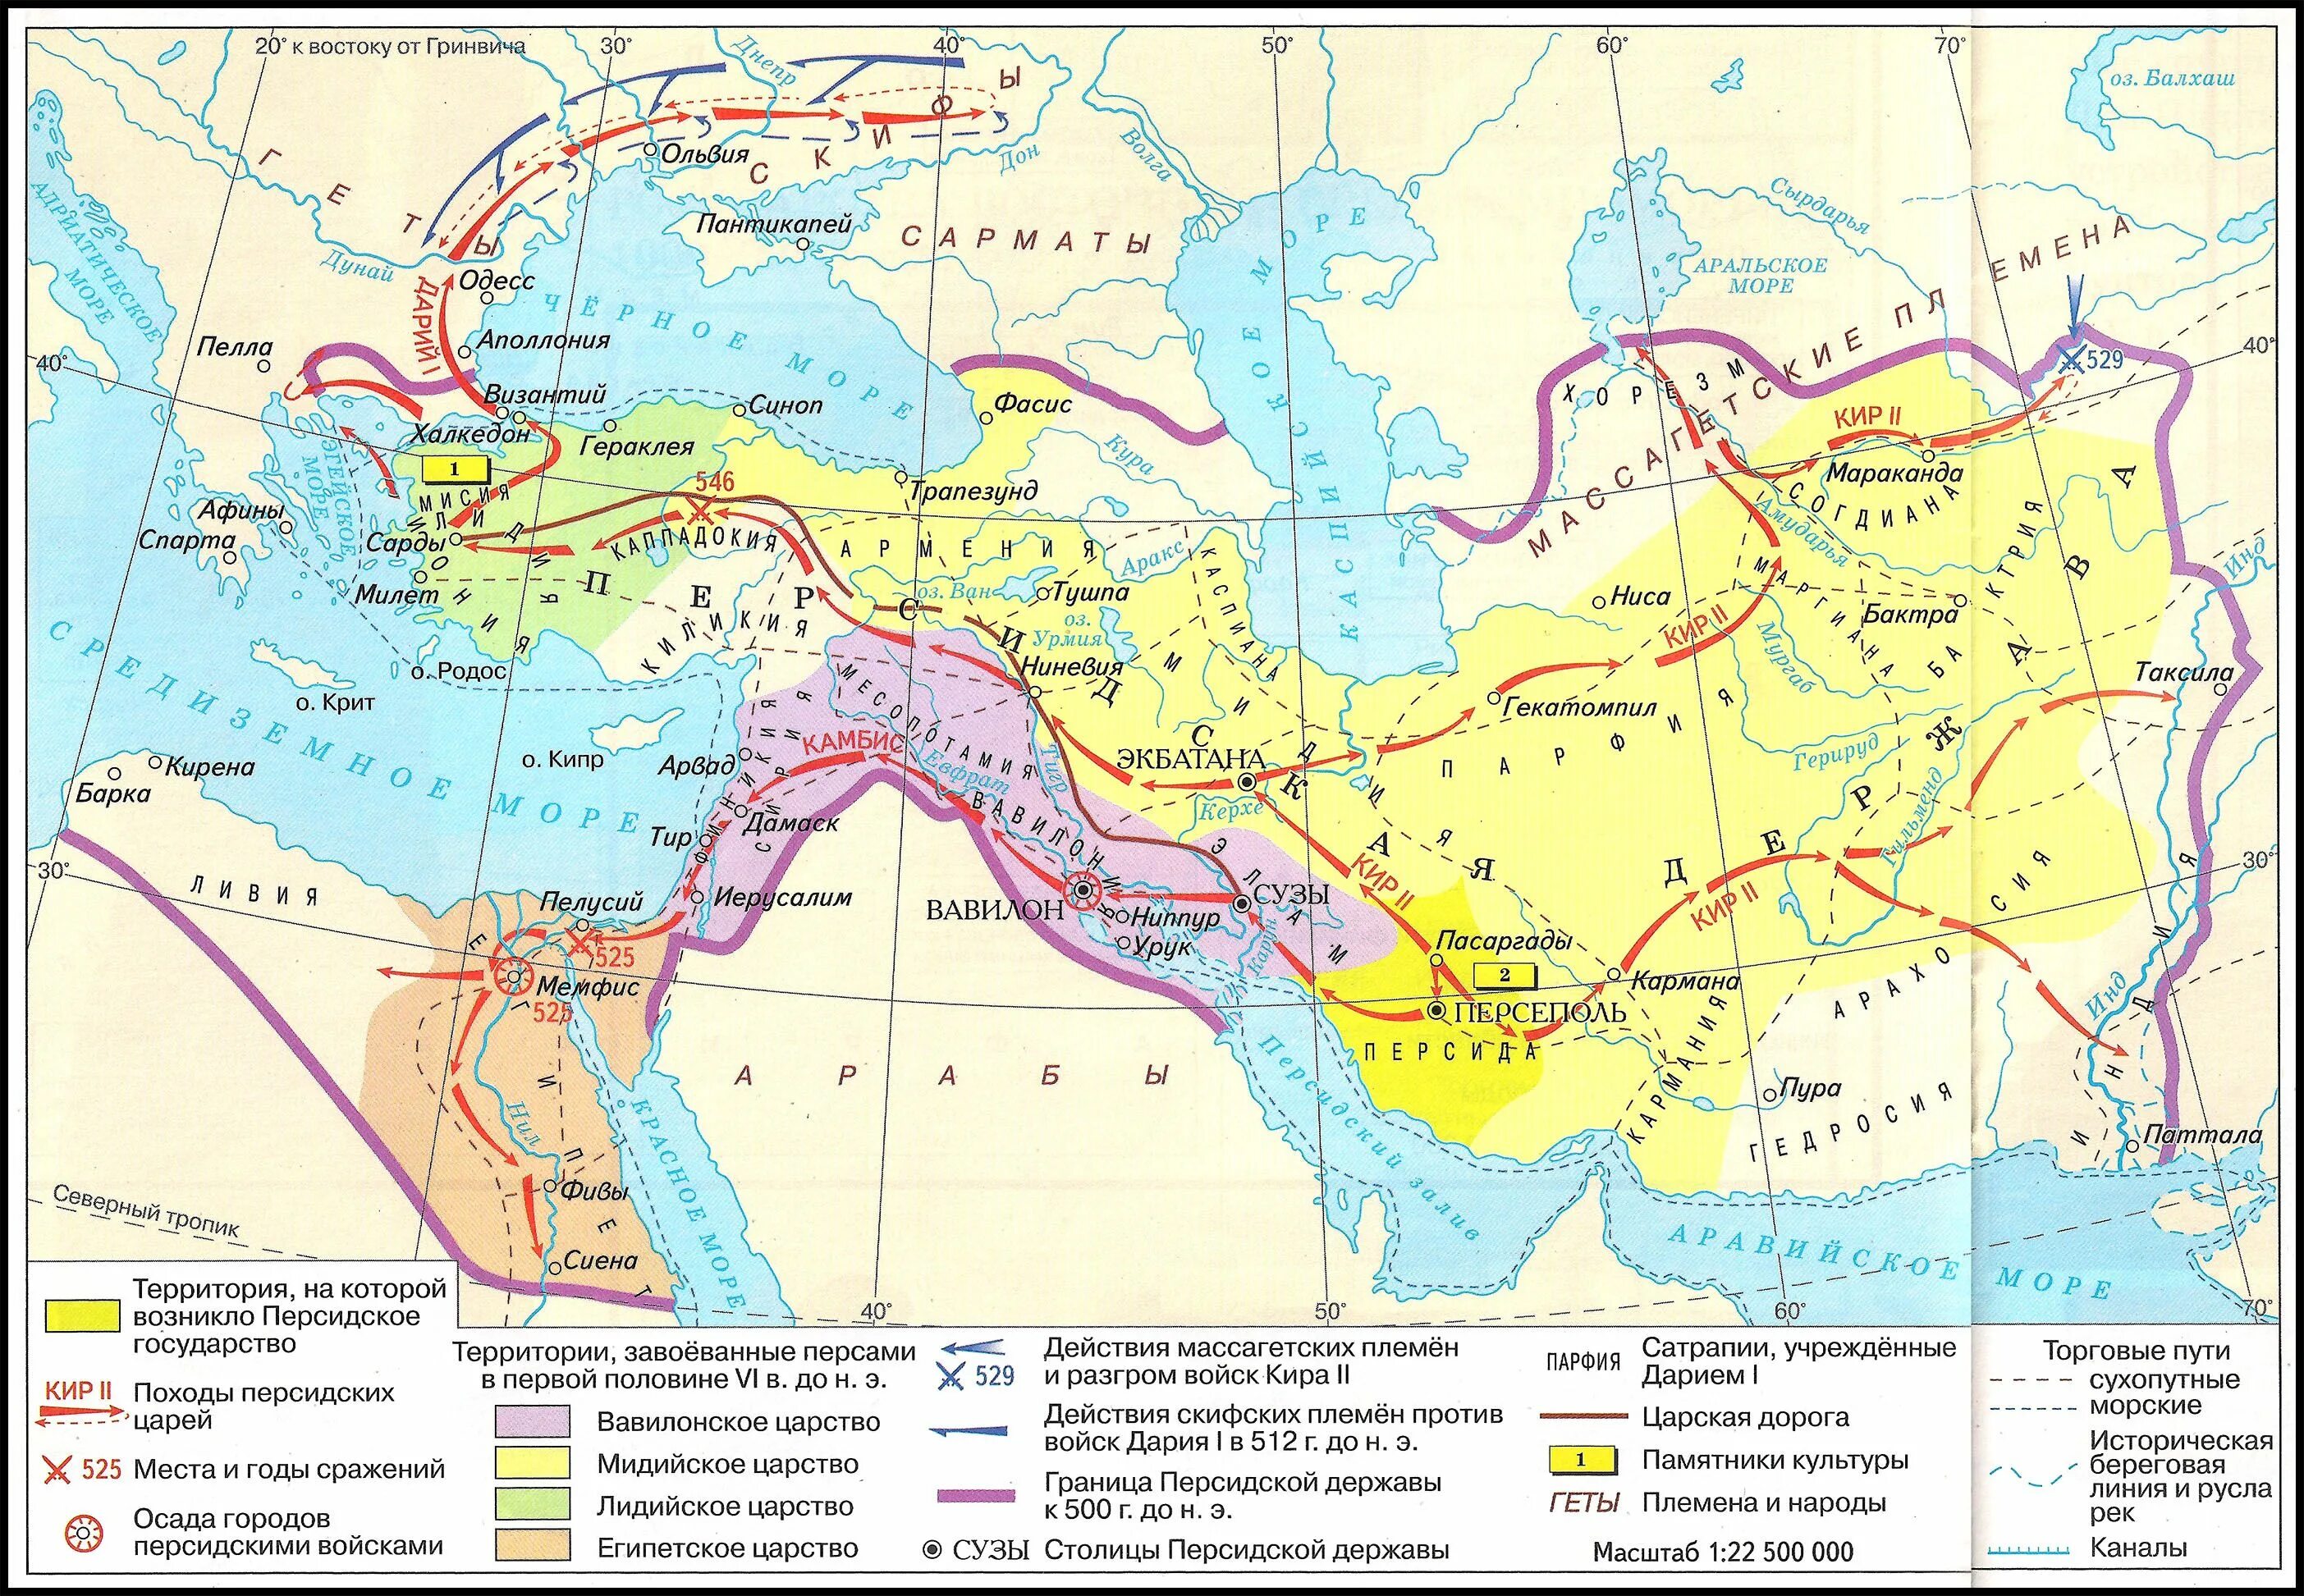 Древняя персидская держава на карте. Персидская держава 550-330 гг до н э.